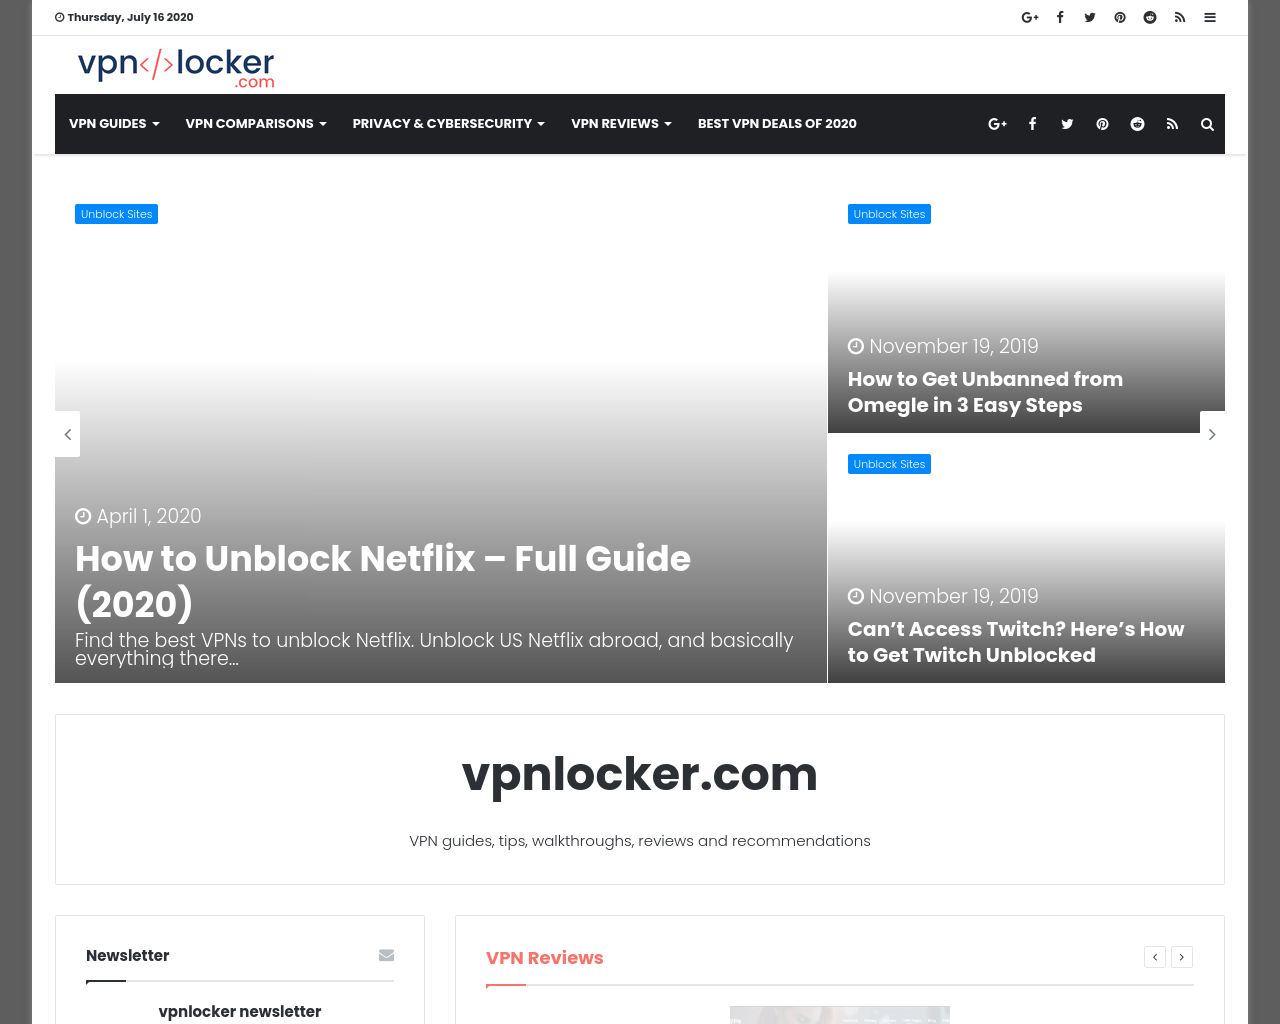 vpnlocker.com